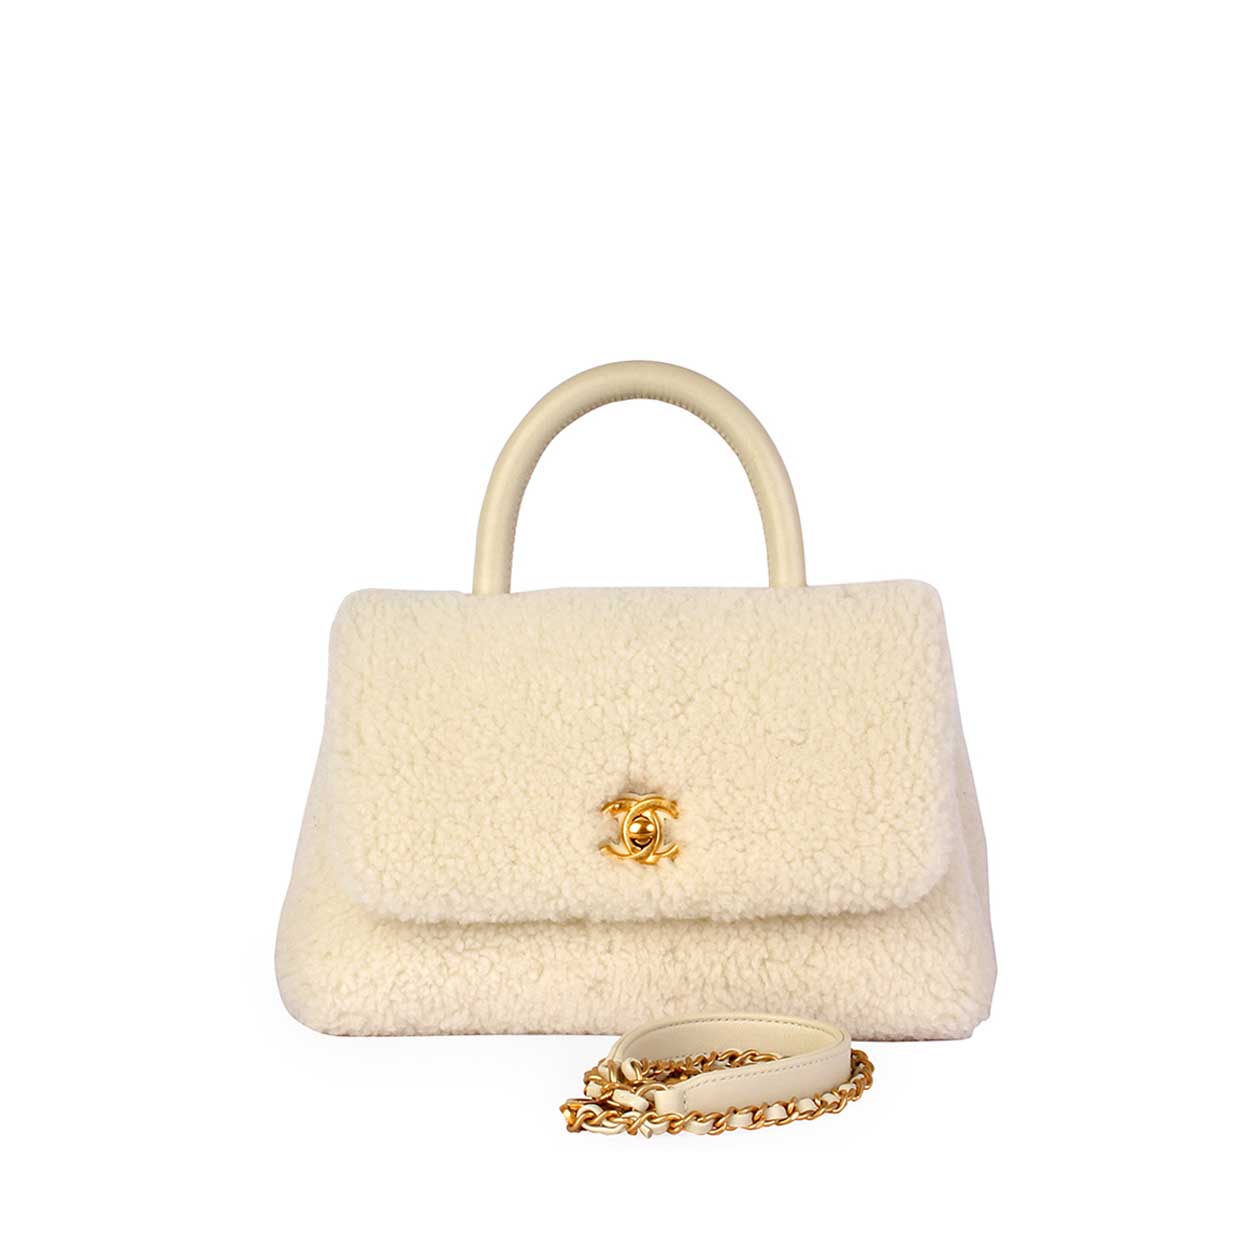 Mua Túi Đeo Chéo Nữ Chanel Small Flap Bag Lambskin  GoldTone Metal Màu  Hồng Nhạt  Chanel  Mua tại Vua Hàng Hiệu h089191